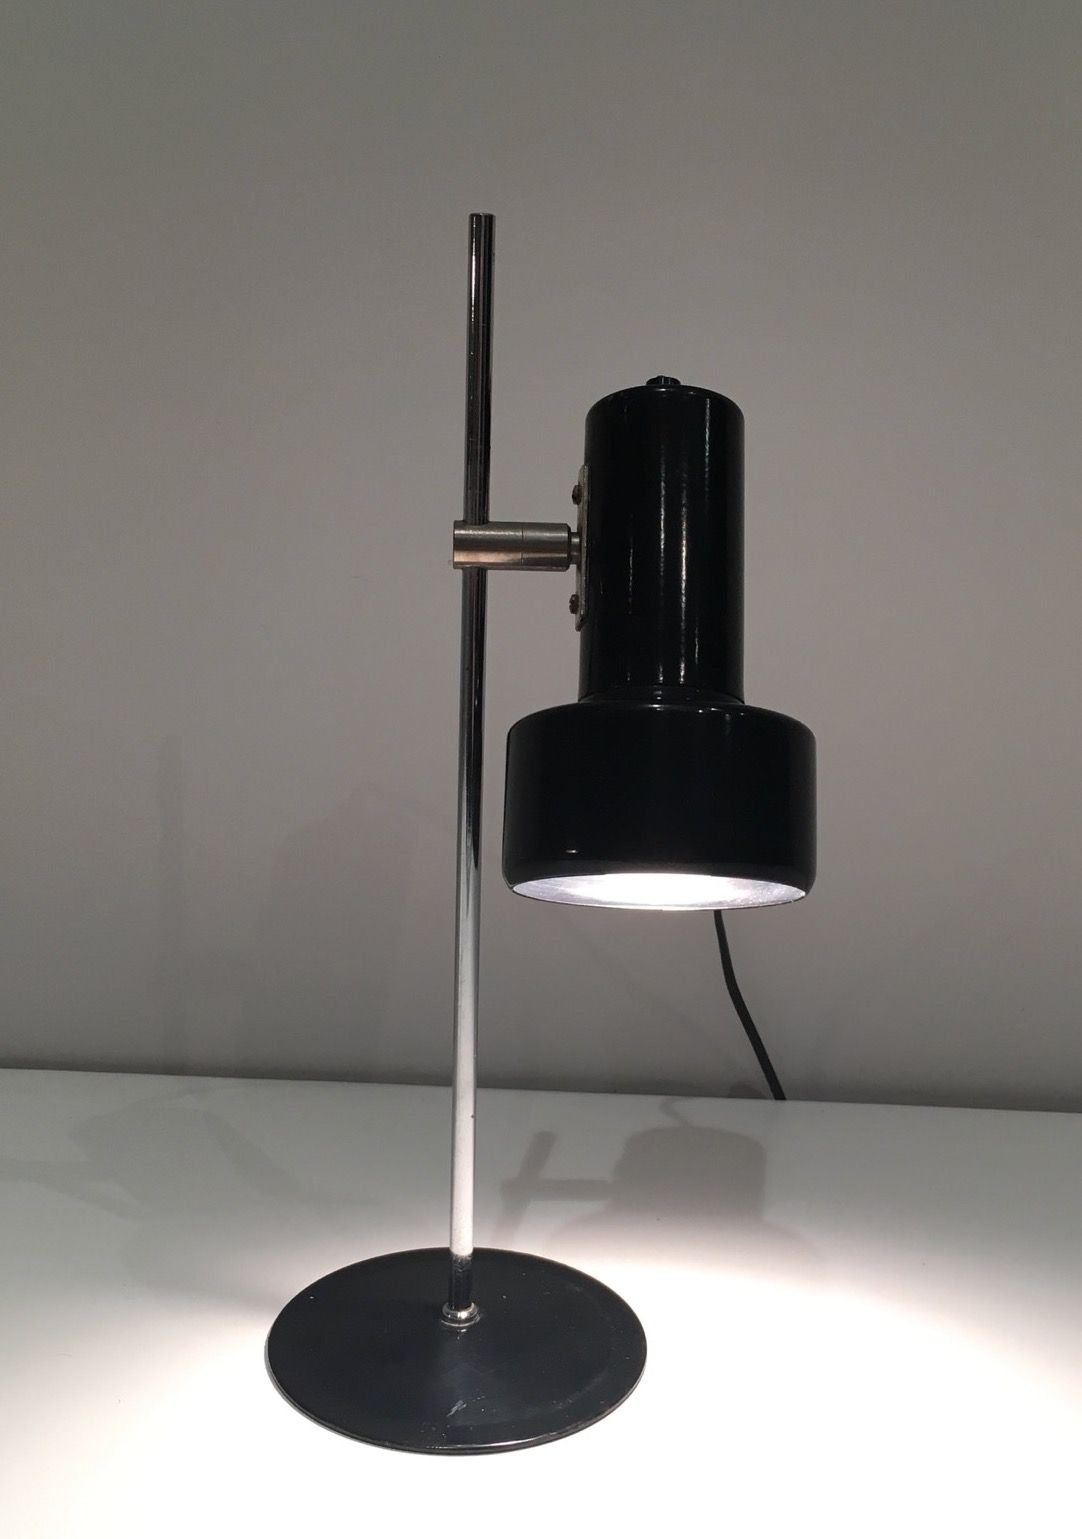 Lampe Réglable en Métal Laqué Noir et Chrome. Travail Français. Vers 1970